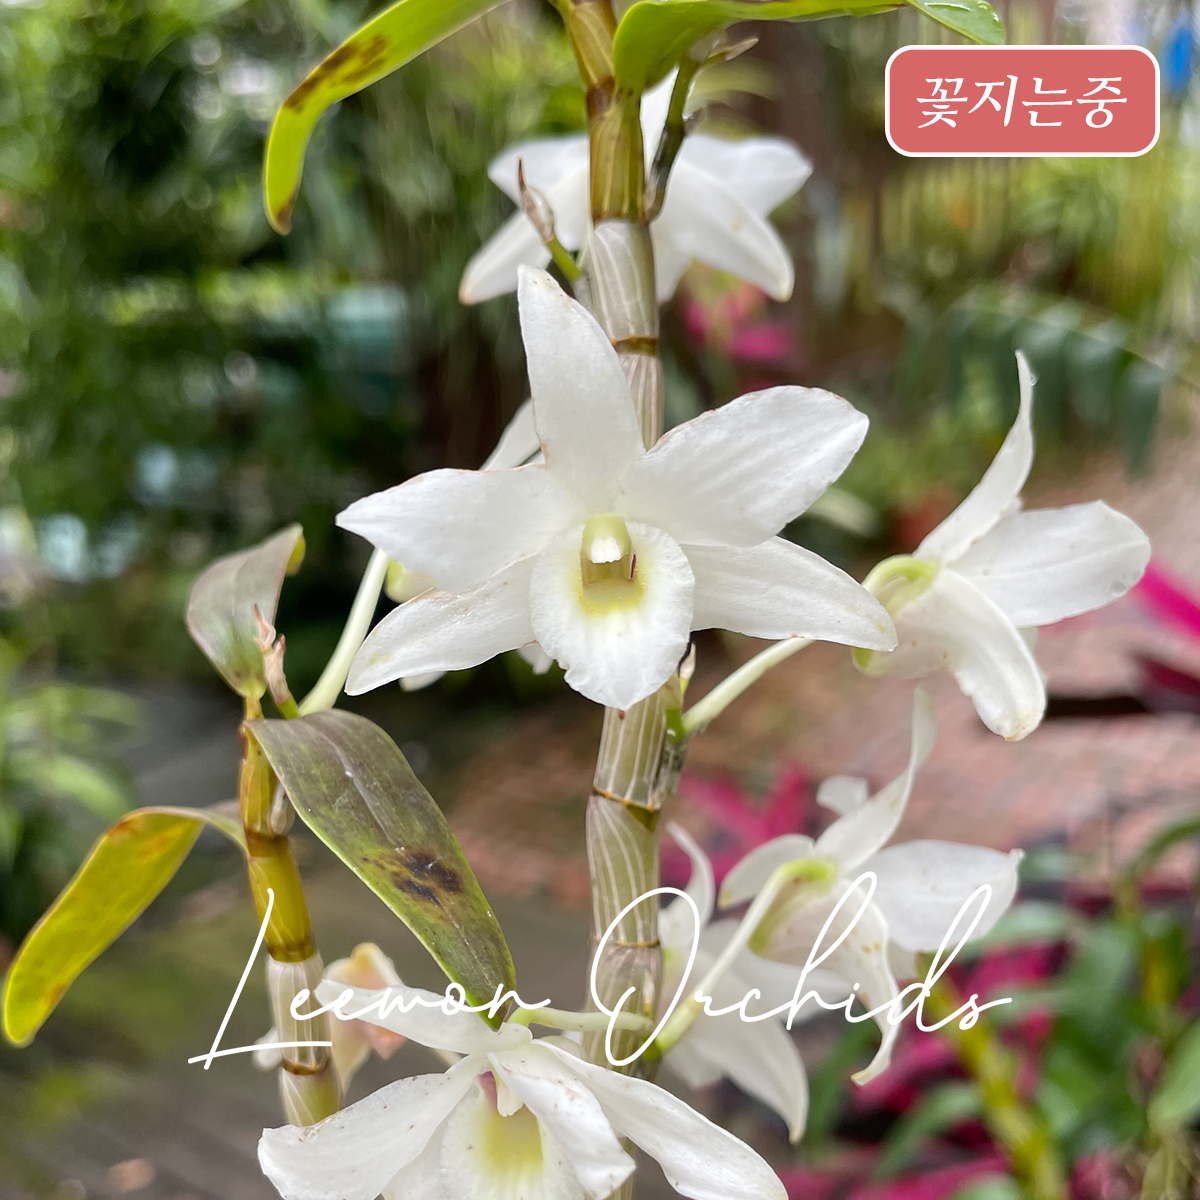 [꽃대X] 덴드로비움 일월성(日月星) 화이트 Dendrobium (officinale x moniliforme) white